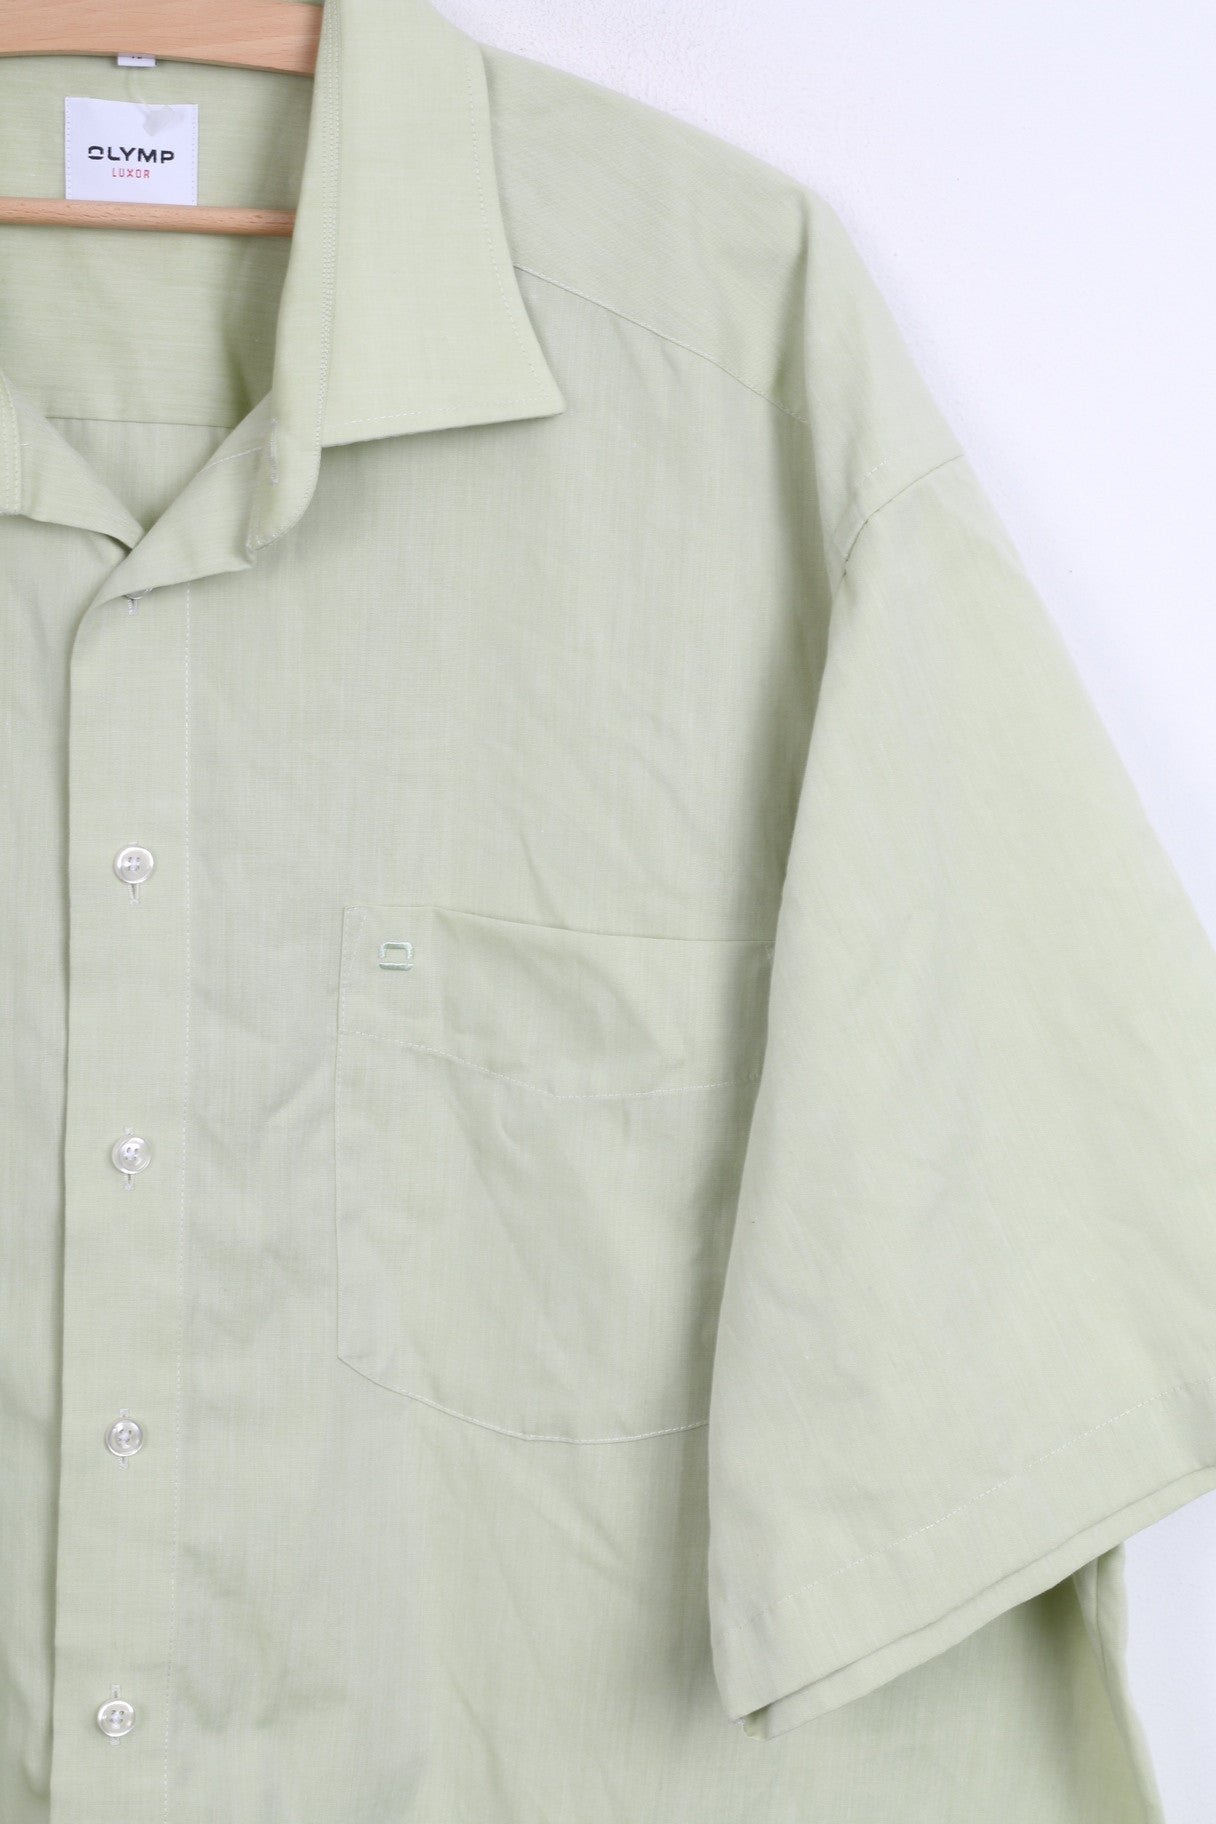 OLYMP Luxor Mens XXL Casual Shirt Green Short Sleeve Standard Collar 45